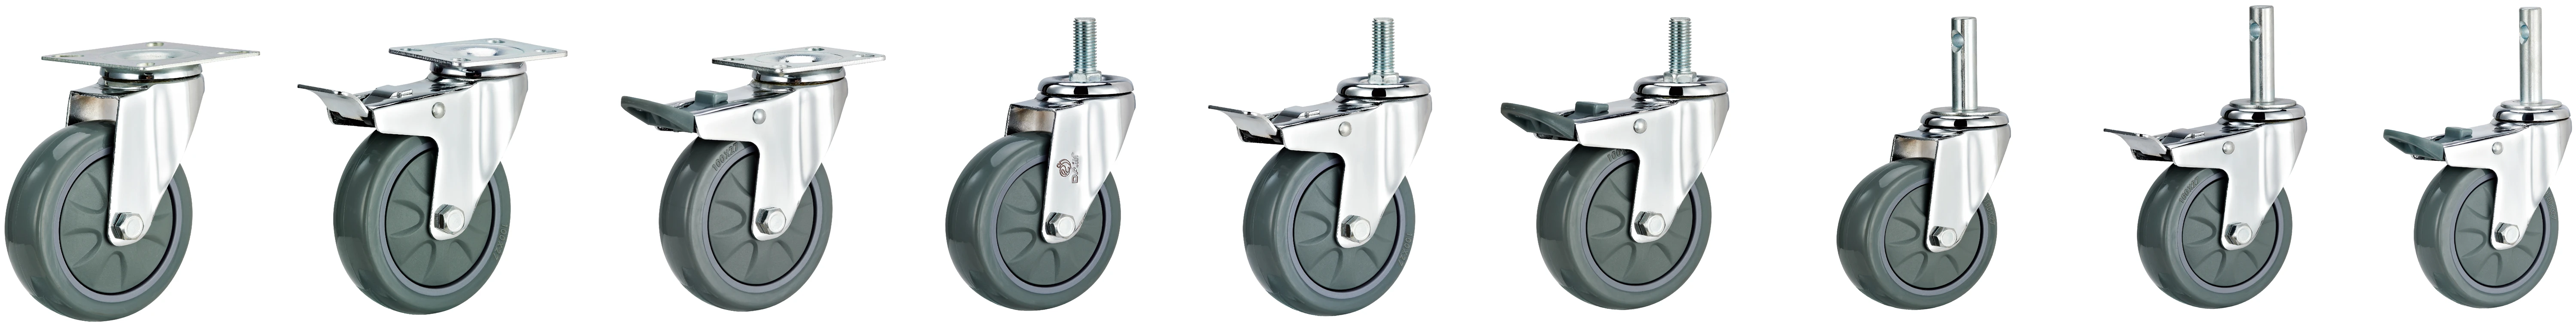 Dajin caster light duty small swivel caster wheels threaded for trolleys